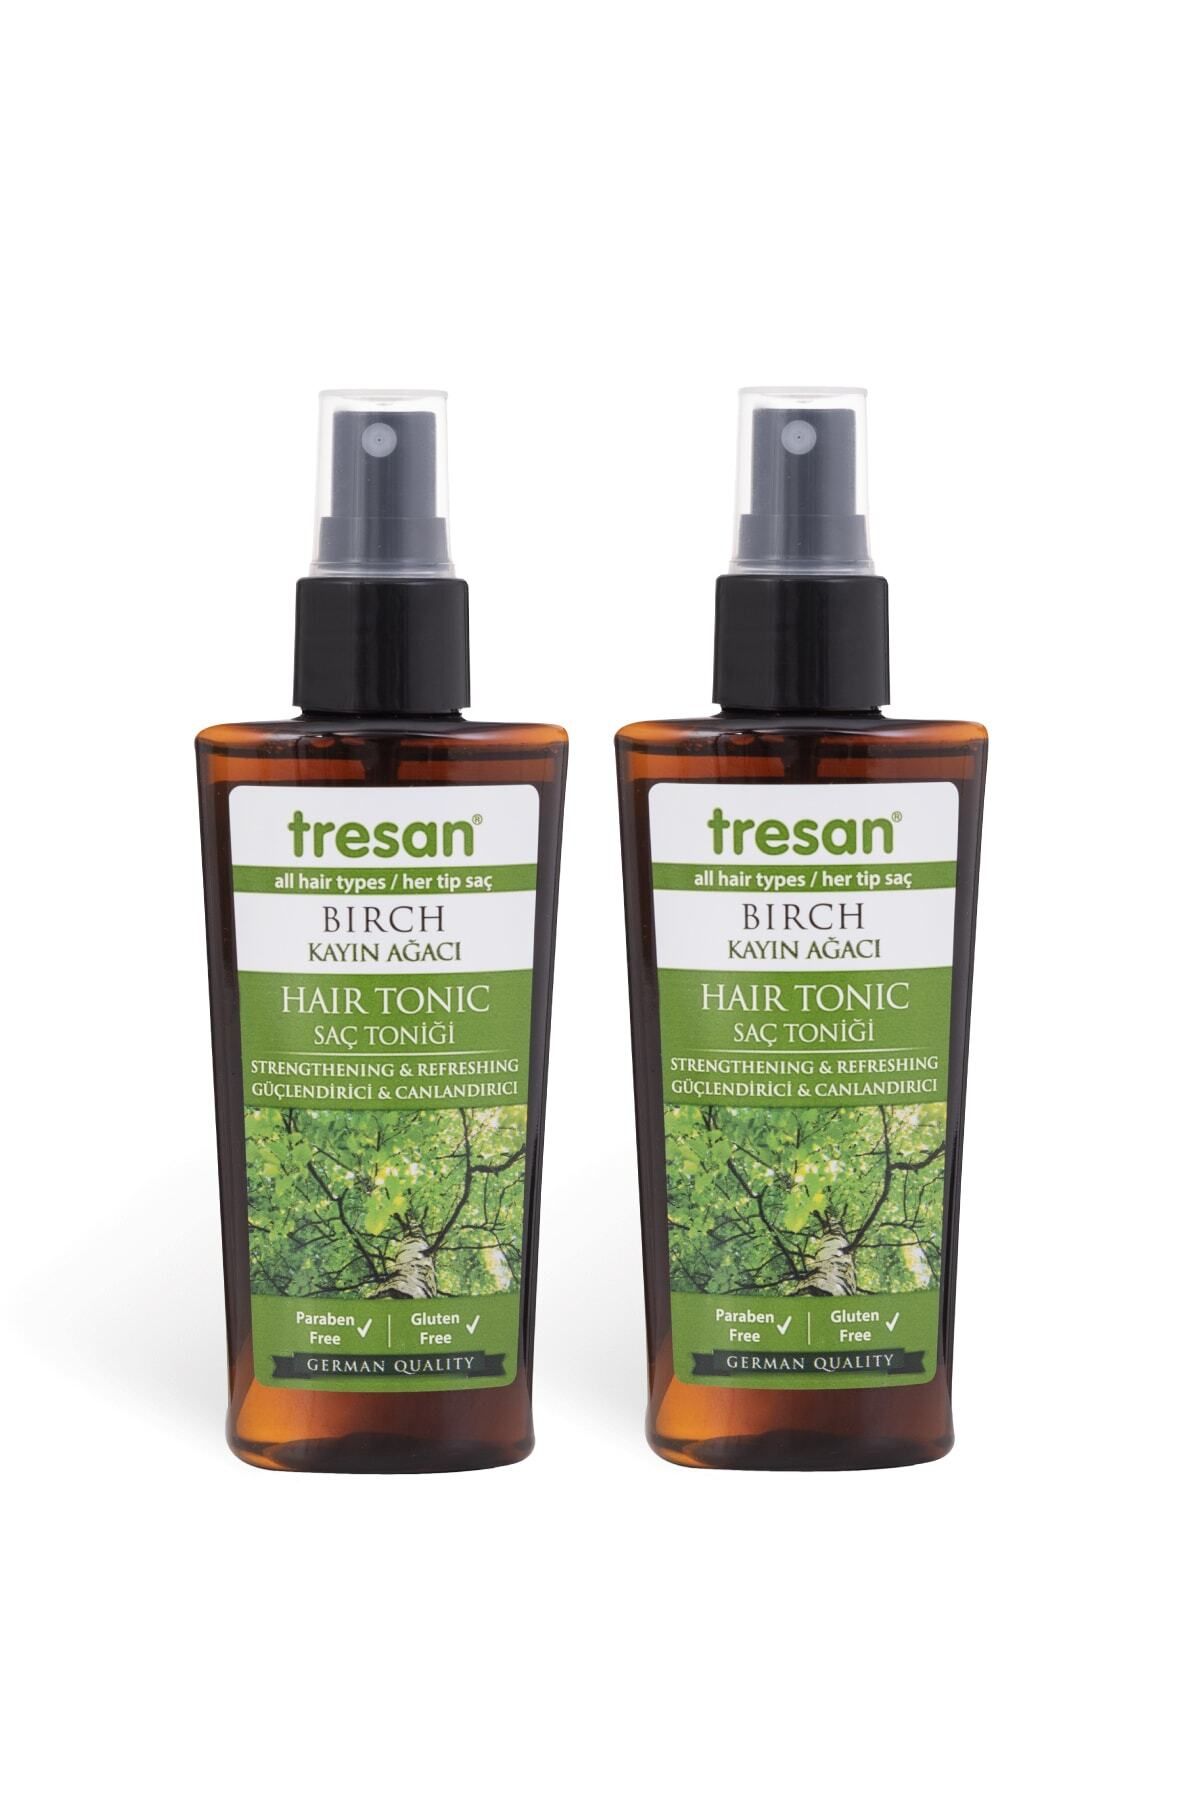 Tresan Kayın Ağacı Özlü Güçlendirici Ve Canlandırıcı Saç Toniği 125 ml X 2 Adet